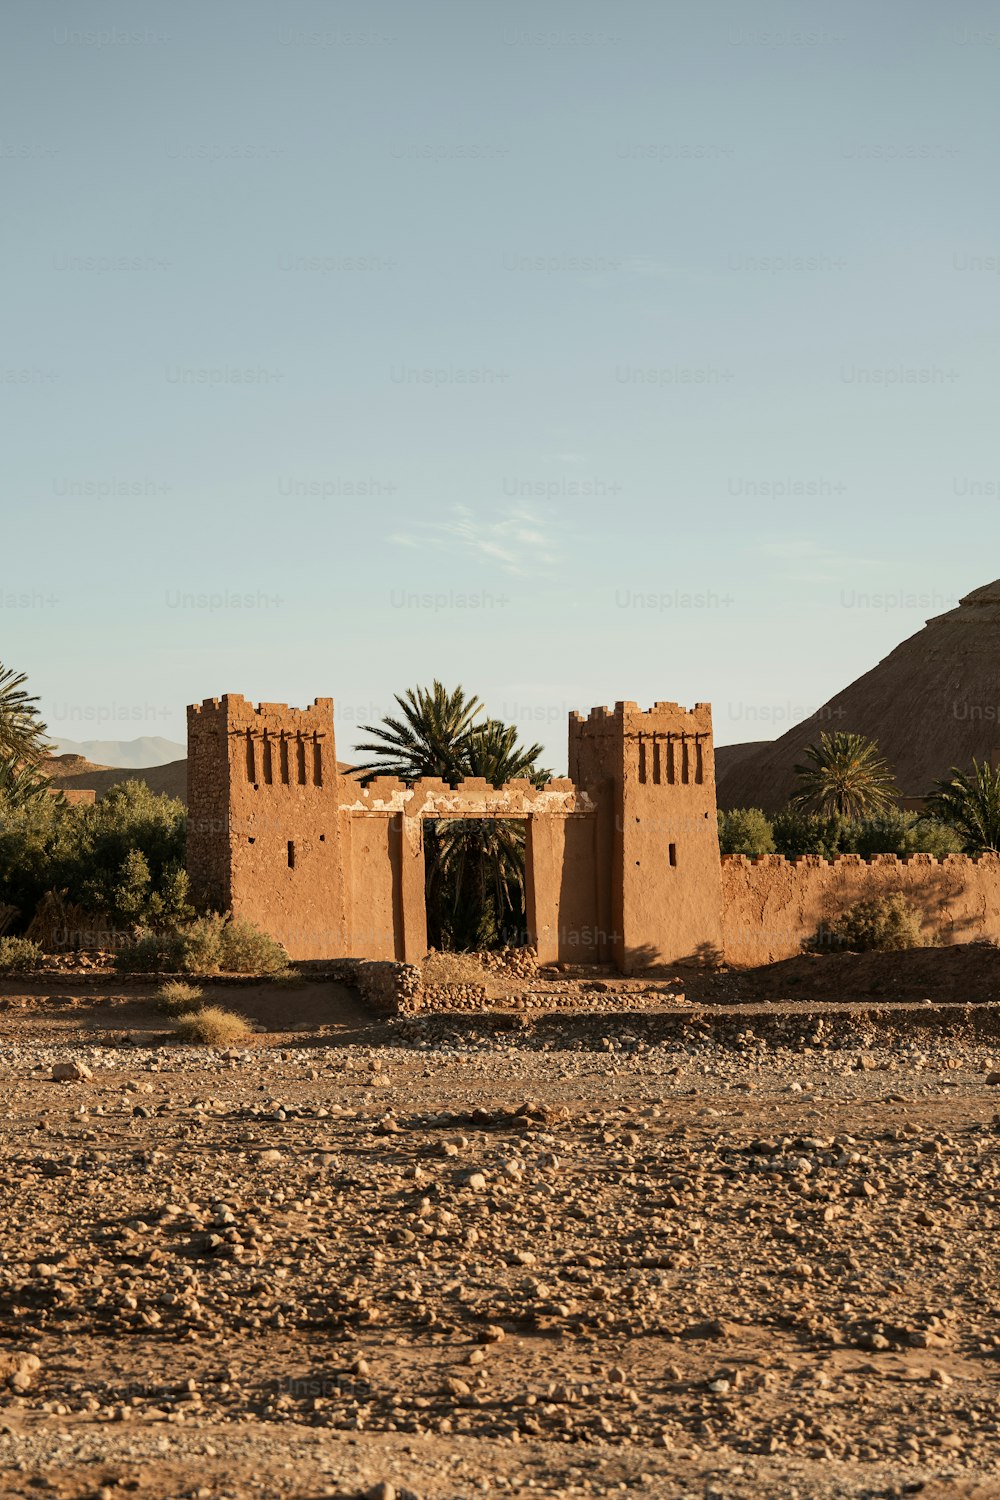 Un edificio de adobe en medio de un desierto